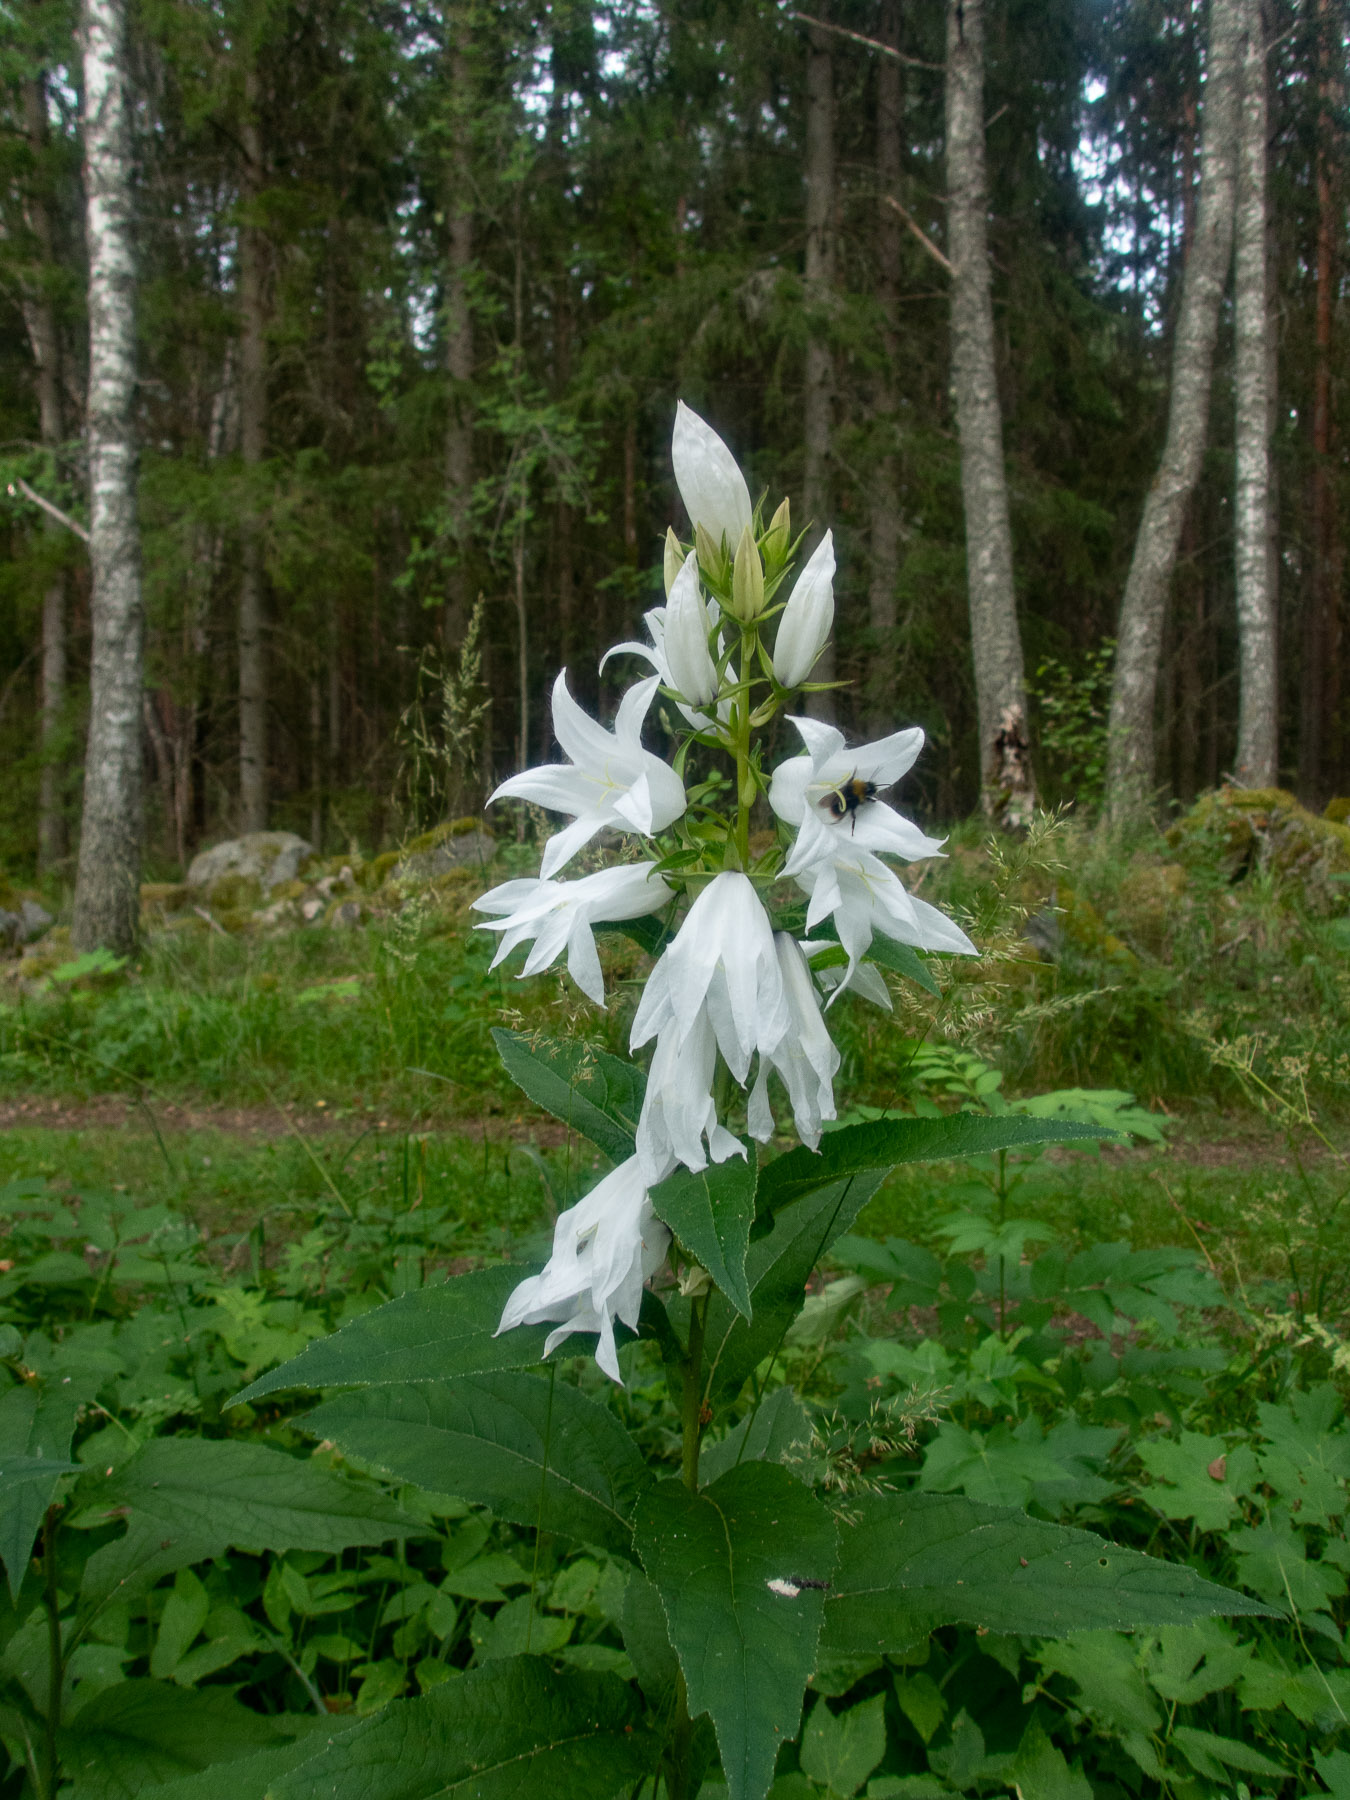 Белая форма.
Национальный парк F?rnebofj?rden, Швеция, июль 2021. Автор фото: Сутормина Марина